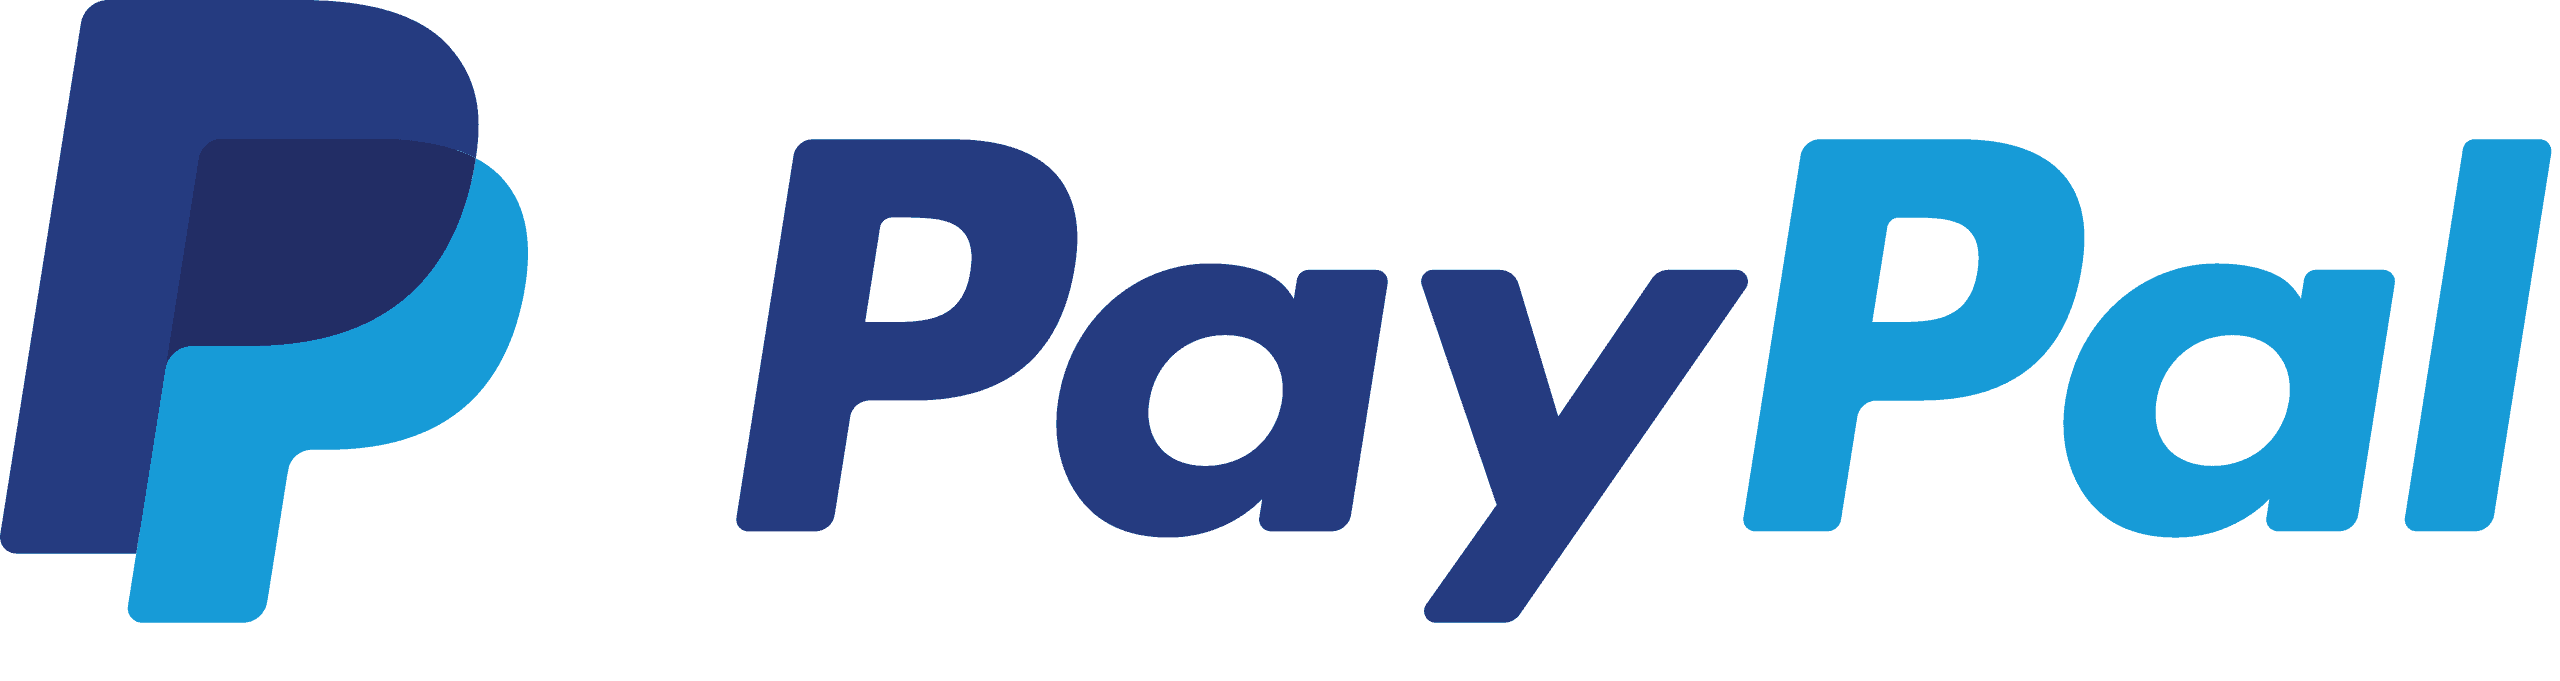 bray-logo